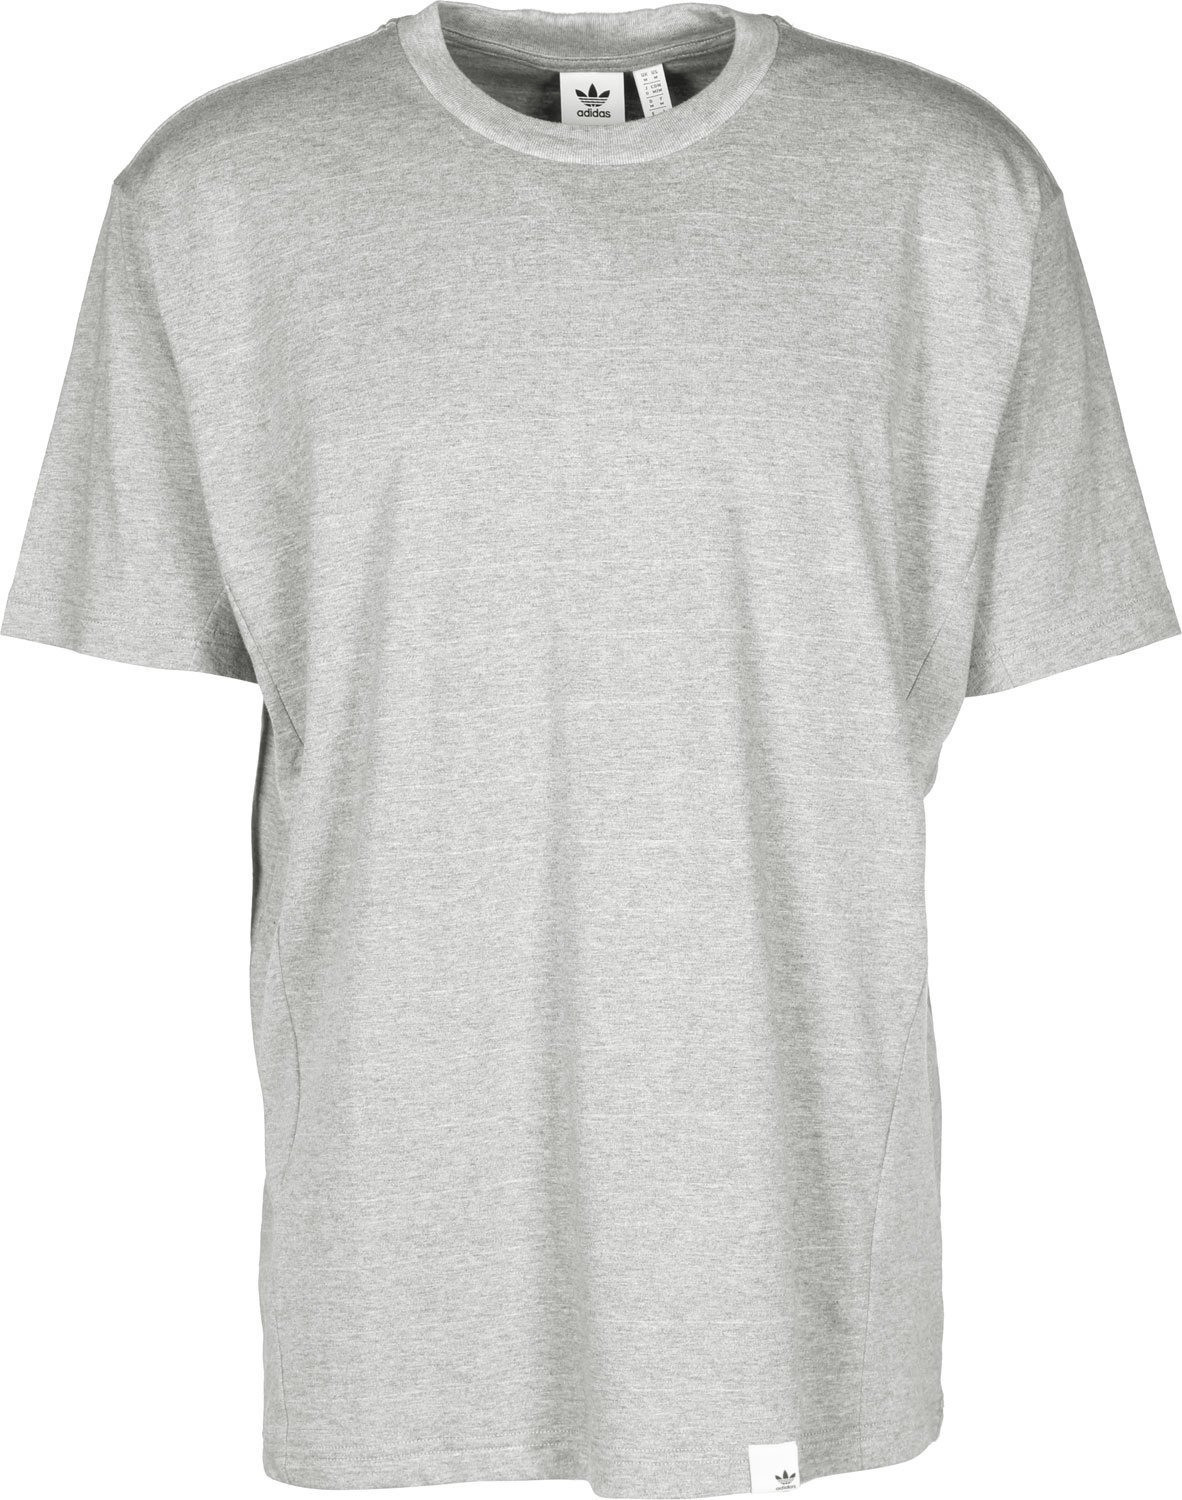 Adidas XbyO T-Shirt medium grey heather (BQ3050)